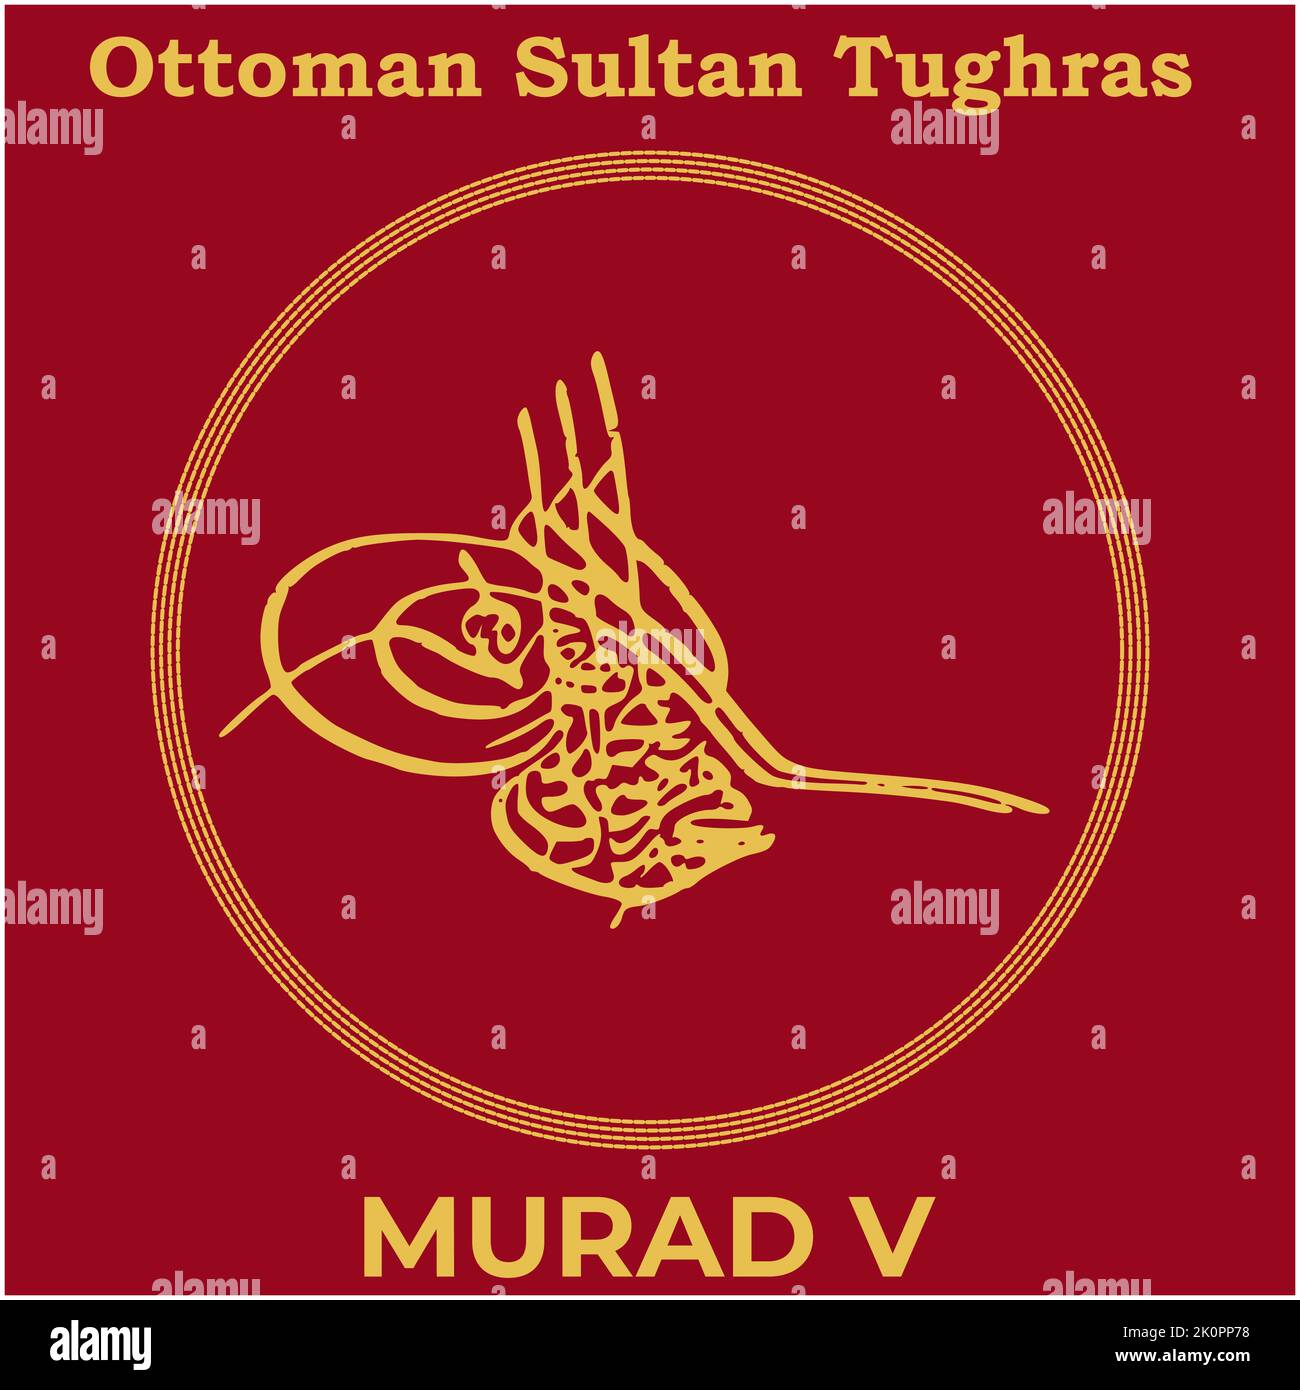 Immagine vettoriale con firma Tughra del trentatreesimo sultano Murad V ottomano, Tughra di Murad V con sfondo tradizionale di pittura turca. Illustrazione Vettoriale